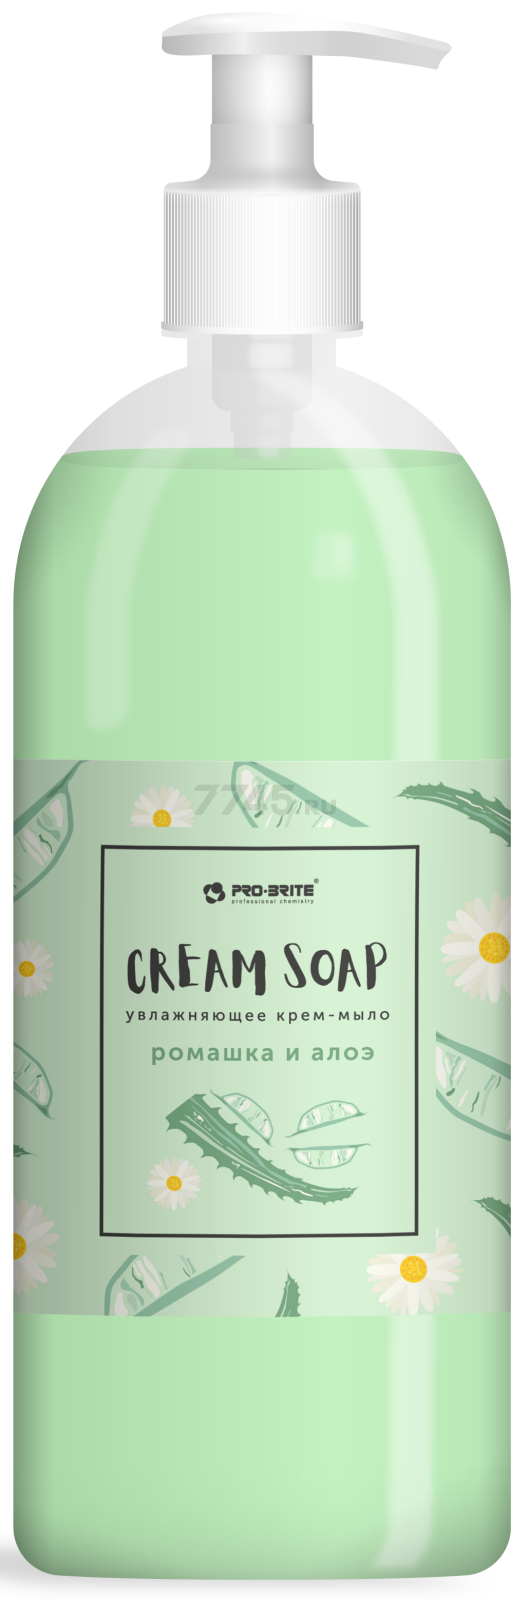 Крем-мыло жидкое PRO-BRITE Cream Soap Standard Ромашка и алоэ 1 л (1090-1)